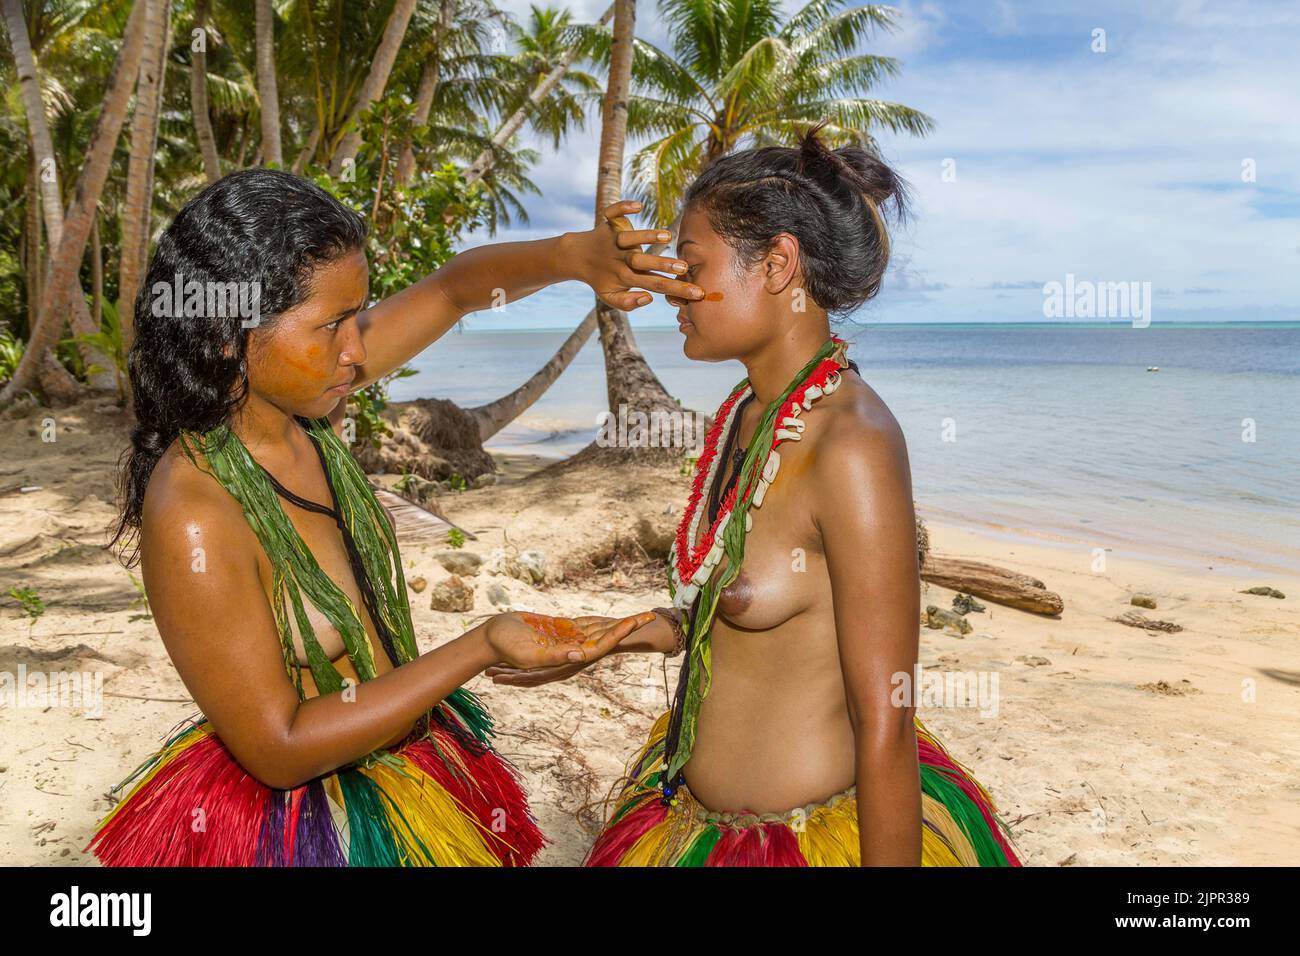 Queste giovani ragazze (MR) si stanno preparando per una tradizionale cerimonia culturale sull'isola di Yap, Micronesia. Foto Stock